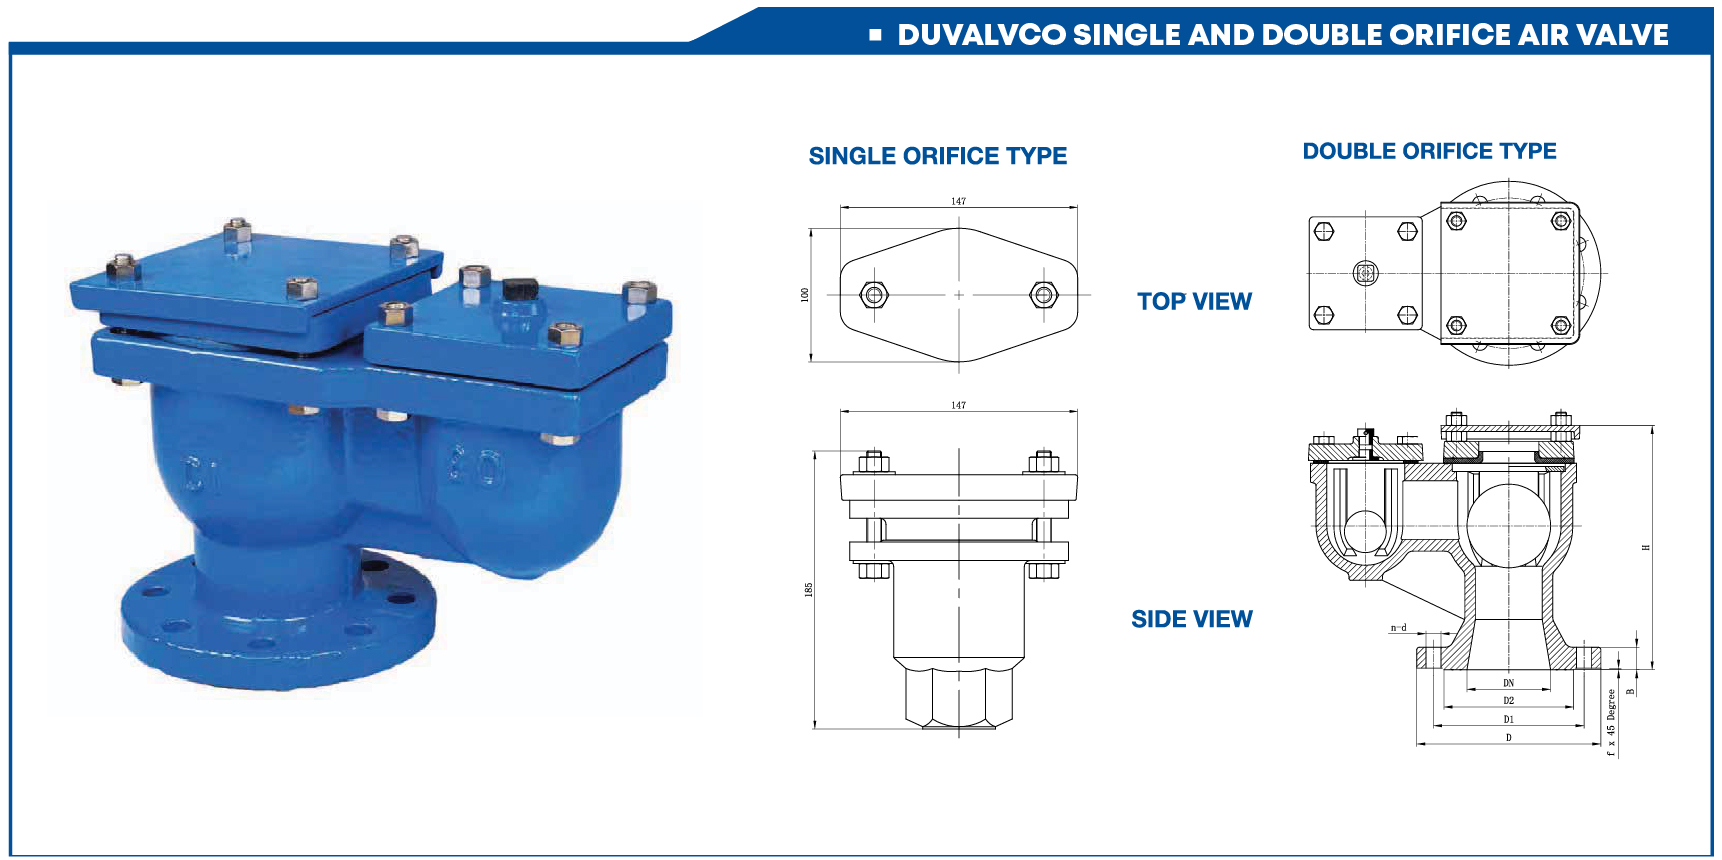 duvalco-air-valve-malaysia